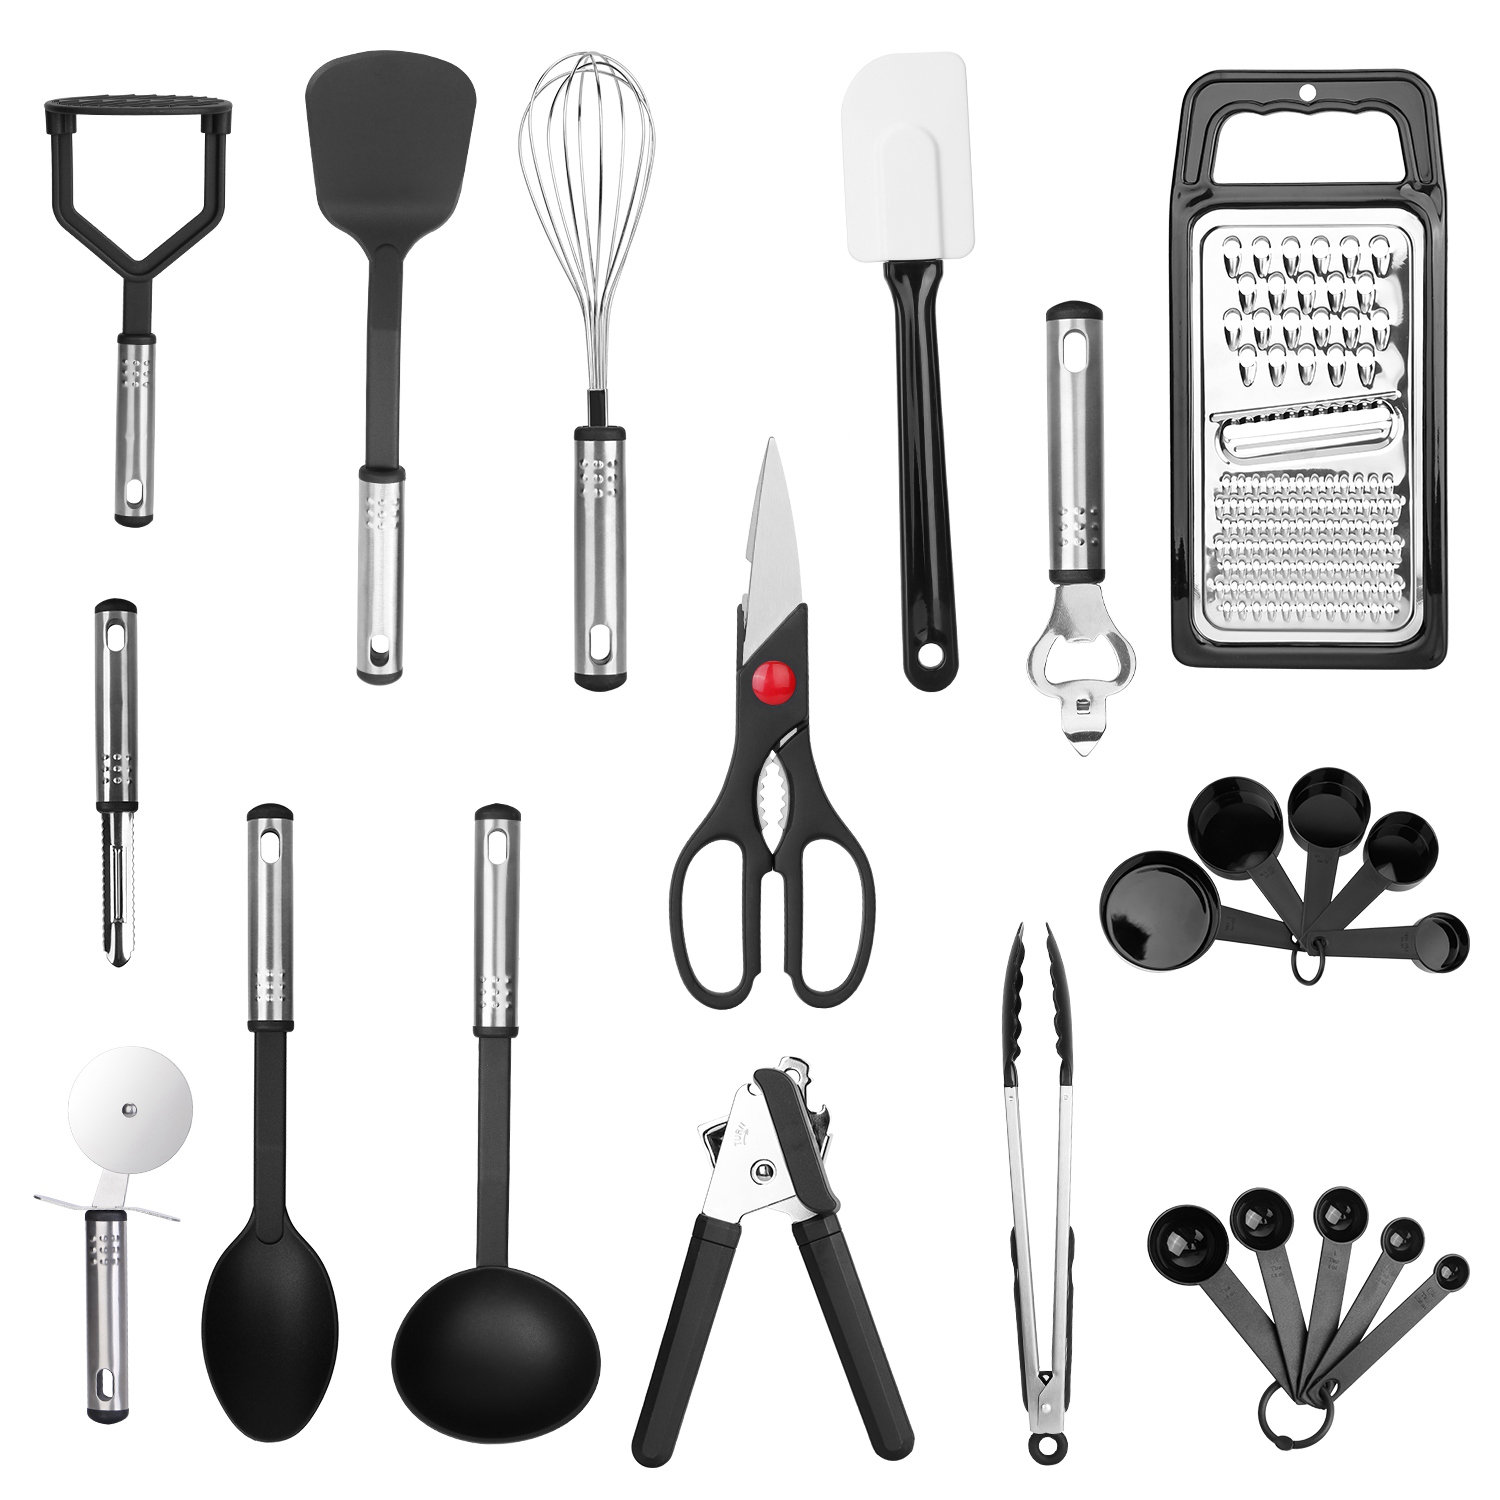 https://assets.wfcdn.com/im/9233254/compr-r85/2265/226513869/11-piece-silicone-assorted-kitchen-utensil-set.jpg